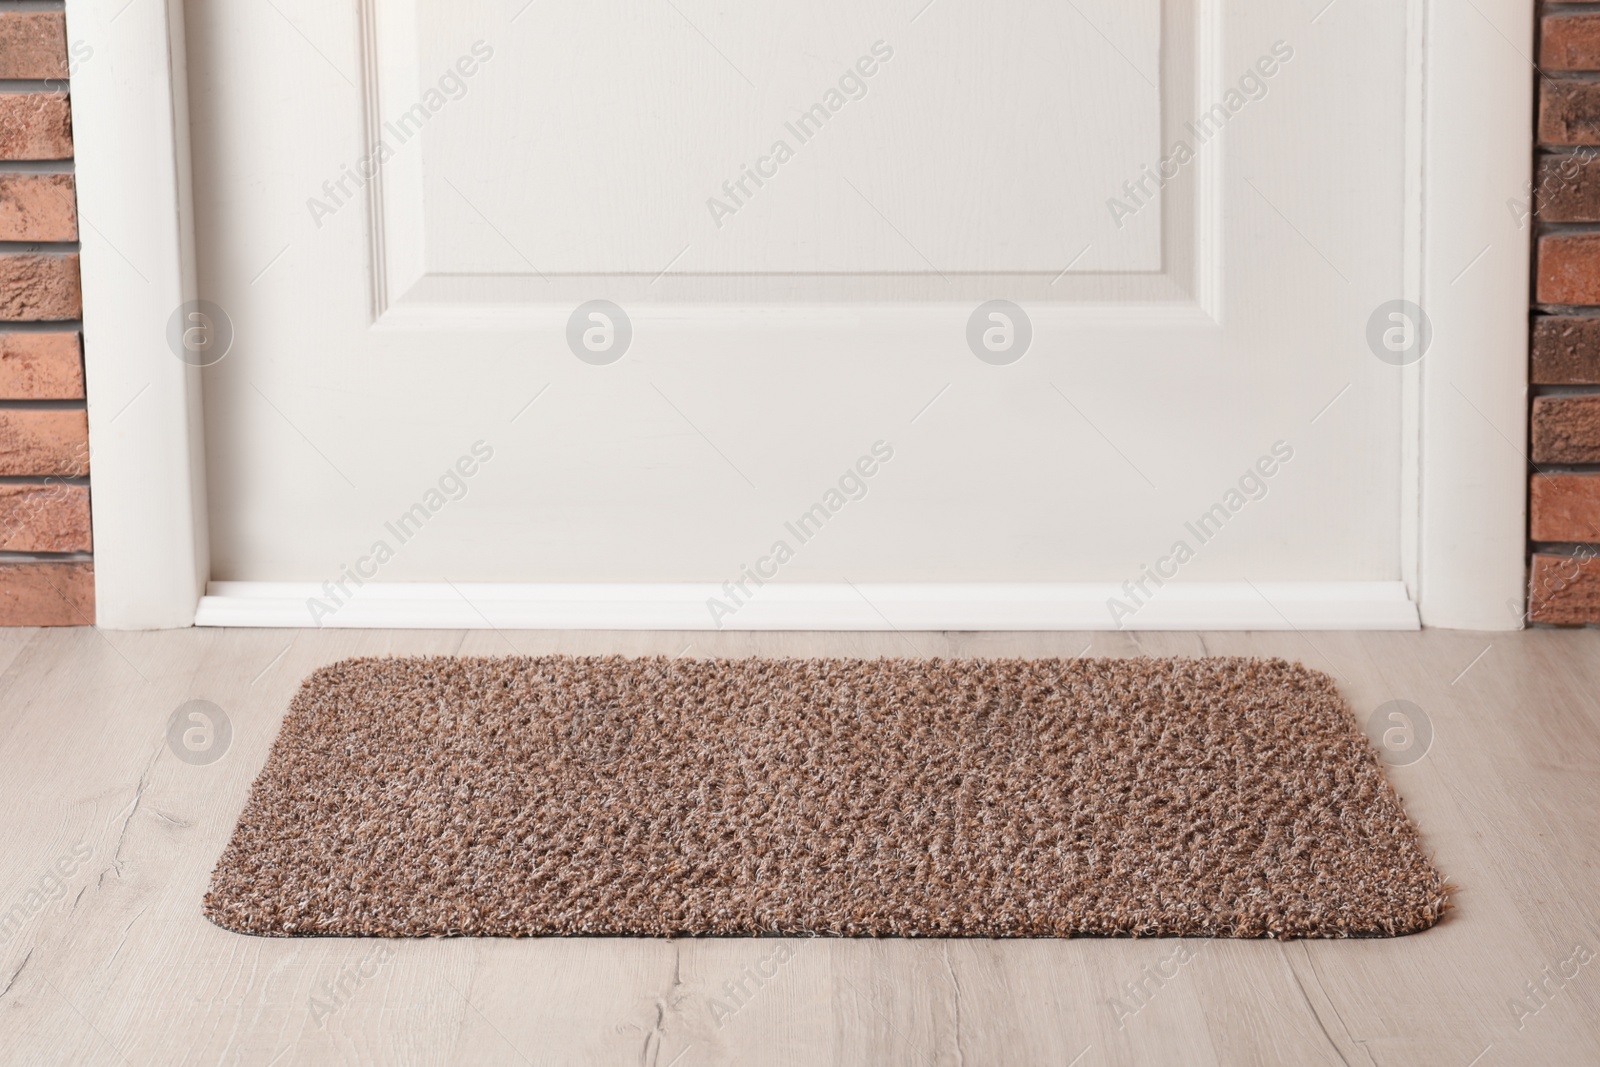 Photo of Grey door mat on wooden floor in hall